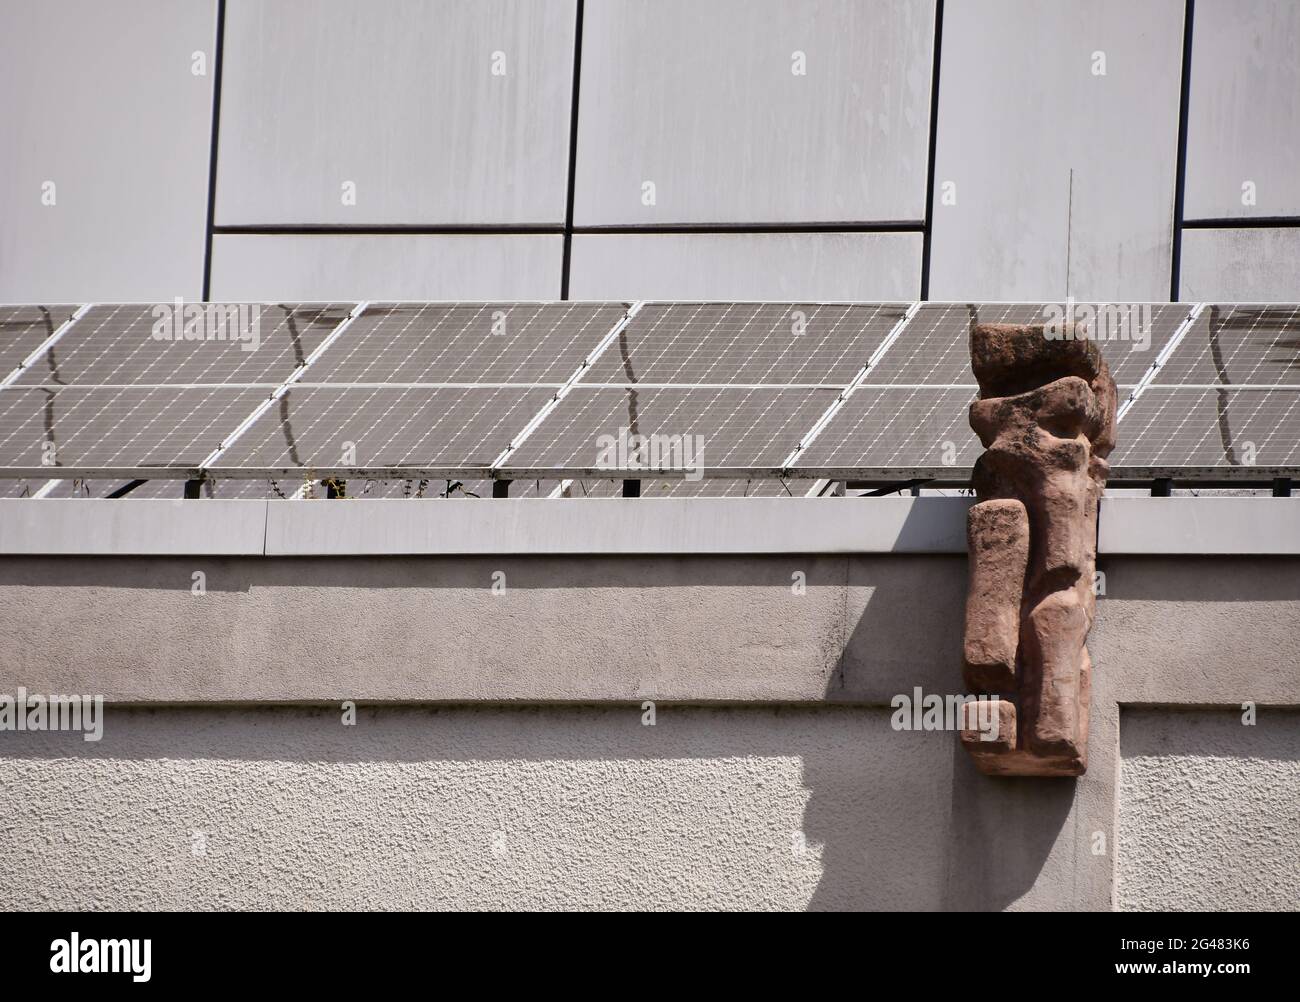 Photovoltaikmodule auf dem Dach eines Theatergebäudes in Pforzheim erzeugen grünen Strom Stockfoto